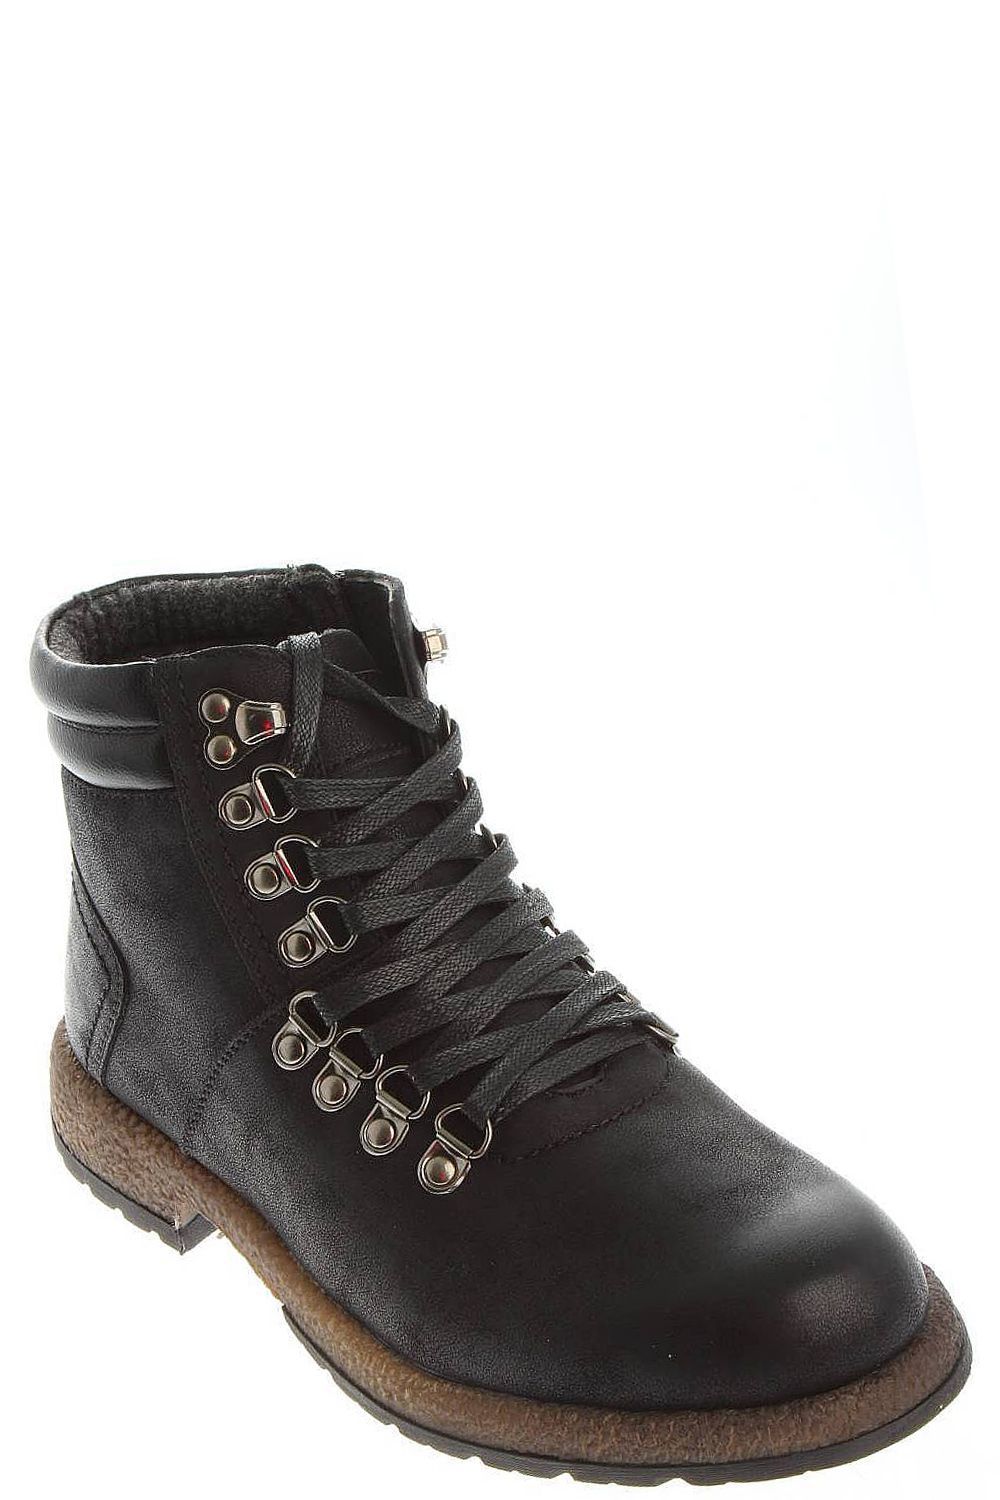 Ботинки Tesoro, размер 41, цвет черный 178668/12-01 - фото 6